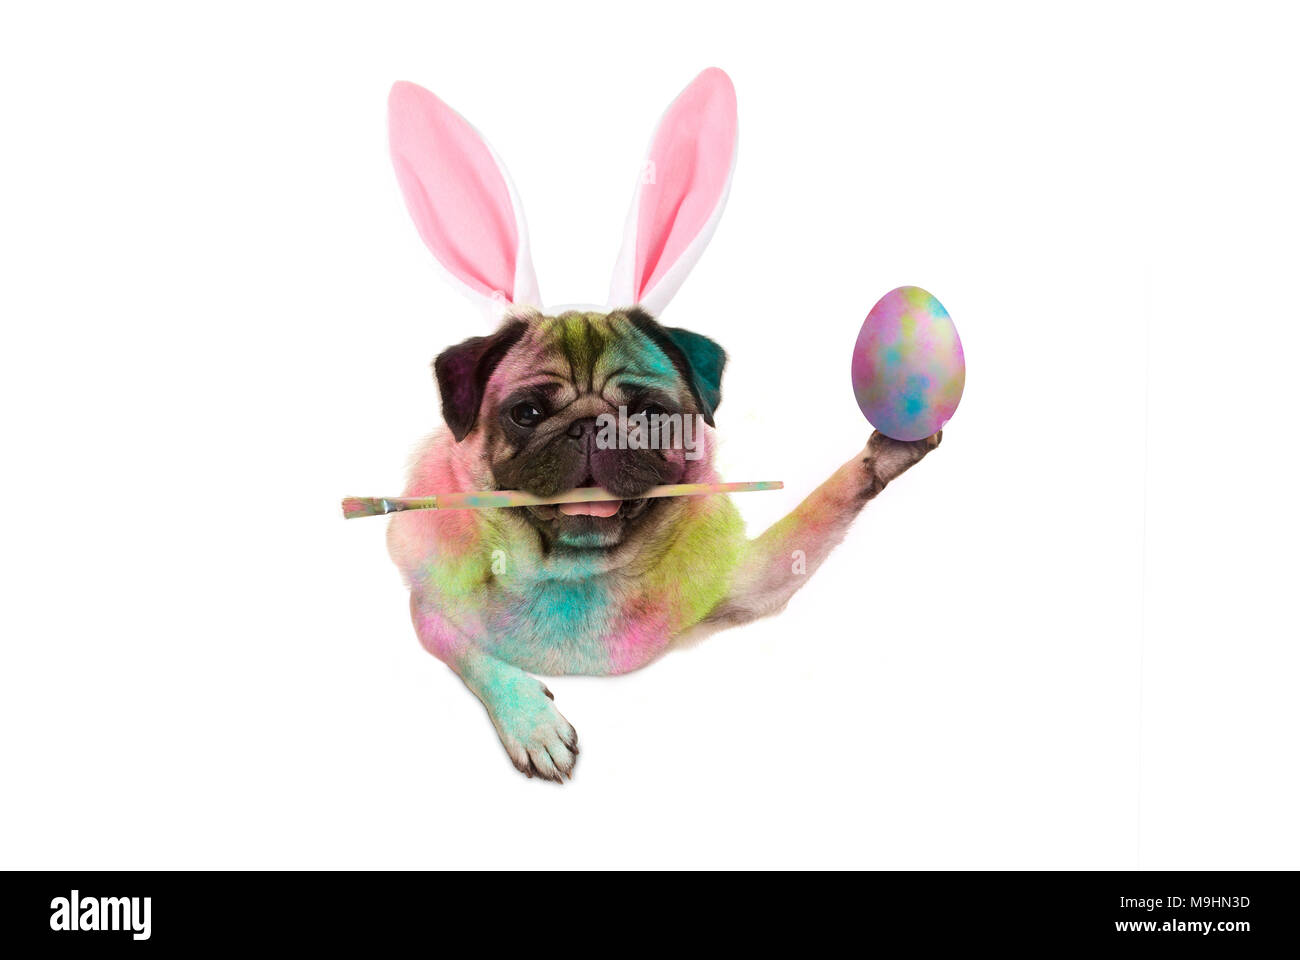 Pasqua colorati pug dog bunny pittura delle uova di pasqua, tenendo il pennello, isolato su sfondo bianco Foto Stock